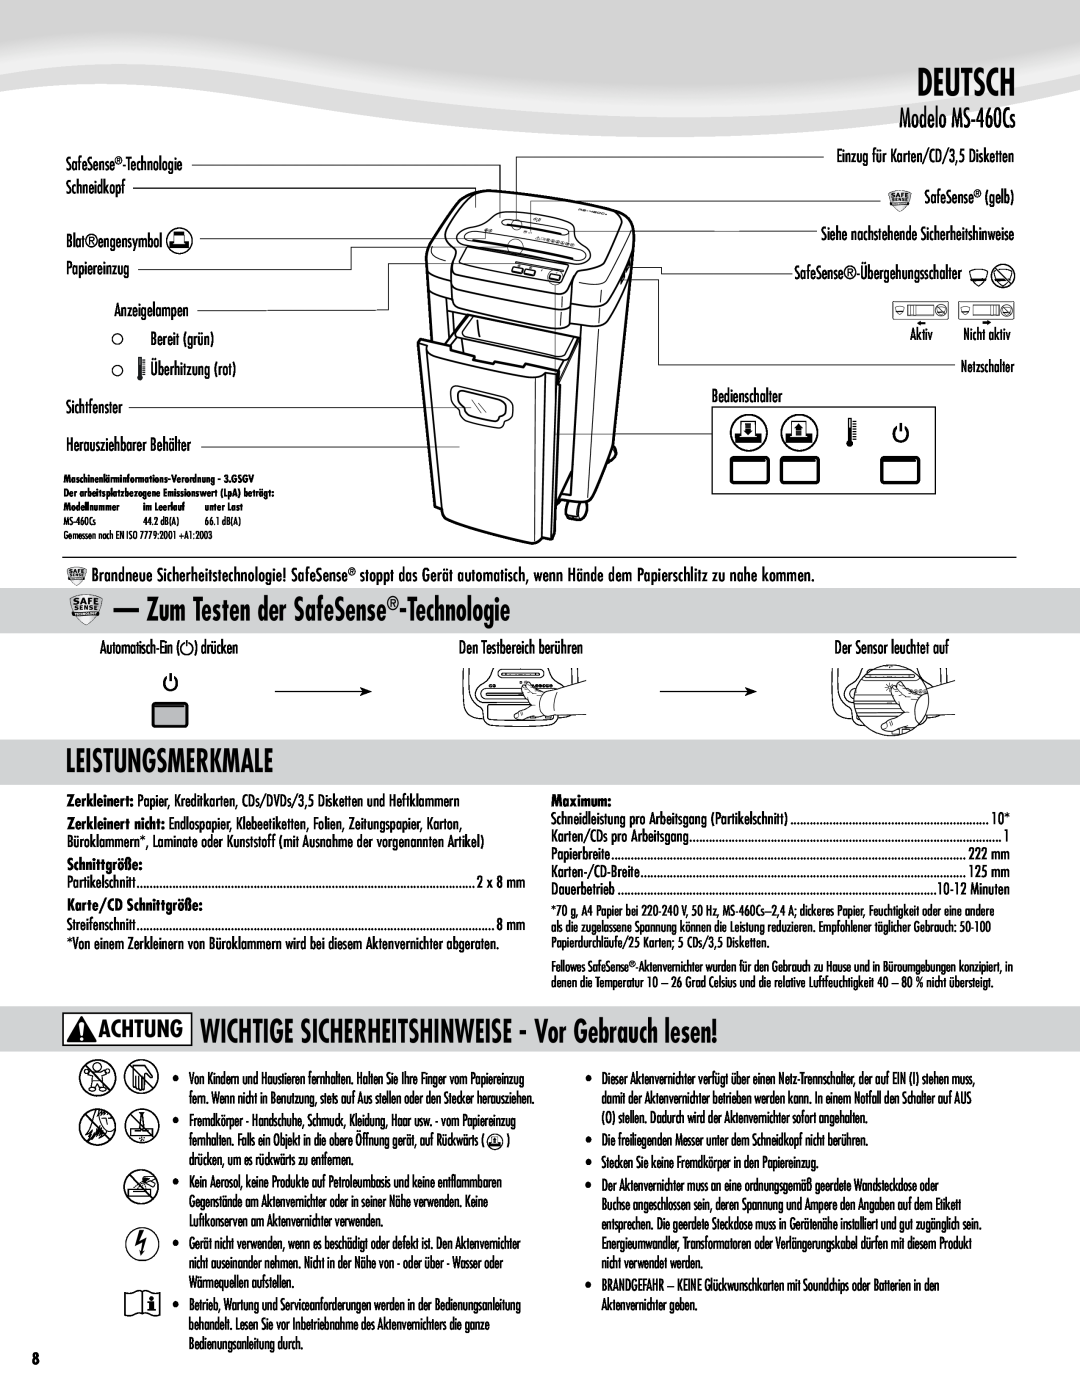 Fellowes Model MS-460Cs manual Deutsch, Zum Testen der SafeSense-Technologie, Leistungsmerkmale, Modelo MS-460Cs 